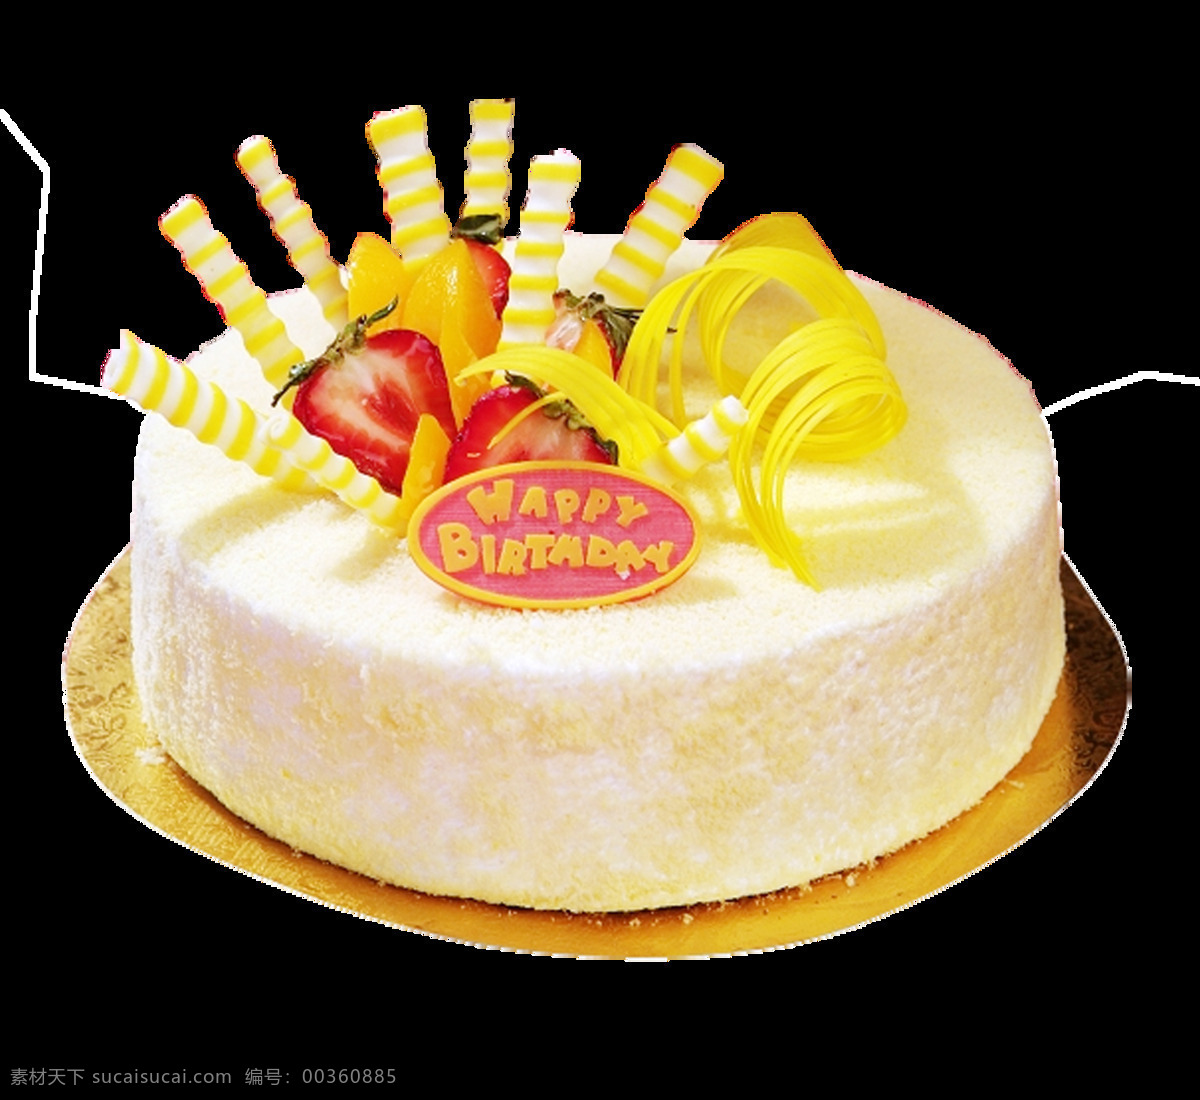 水果 味 生日蛋糕 png蛋糕 创意蛋糕 蛋糕 分层蛋糕 花朵蛋糕 生日 甜品 圆形蛋糕